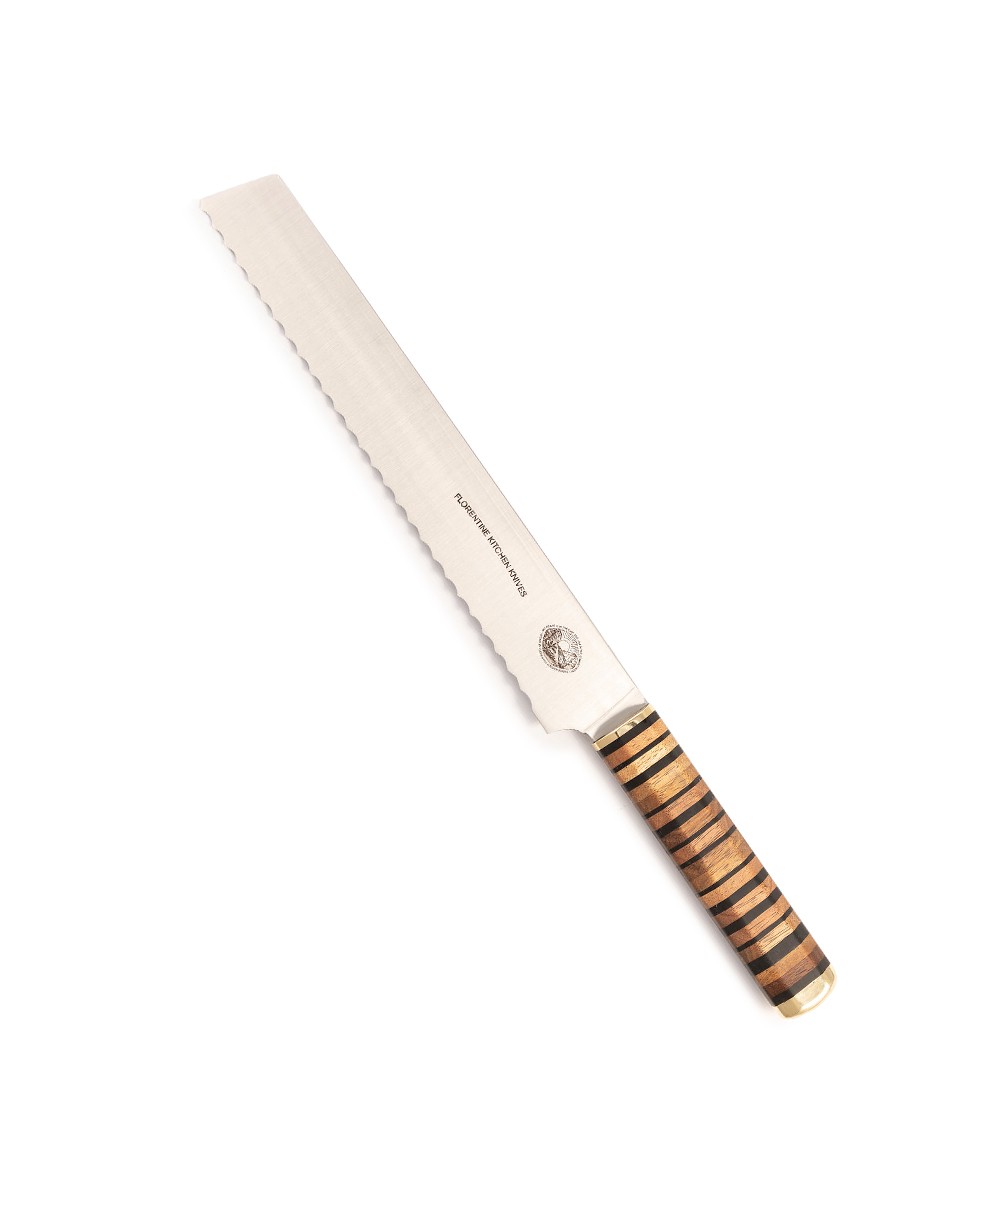 Produktbild des Kedma Pankiri Brotmesser in wood & black von Florentine Kitchen Knives im RAUM concept store 